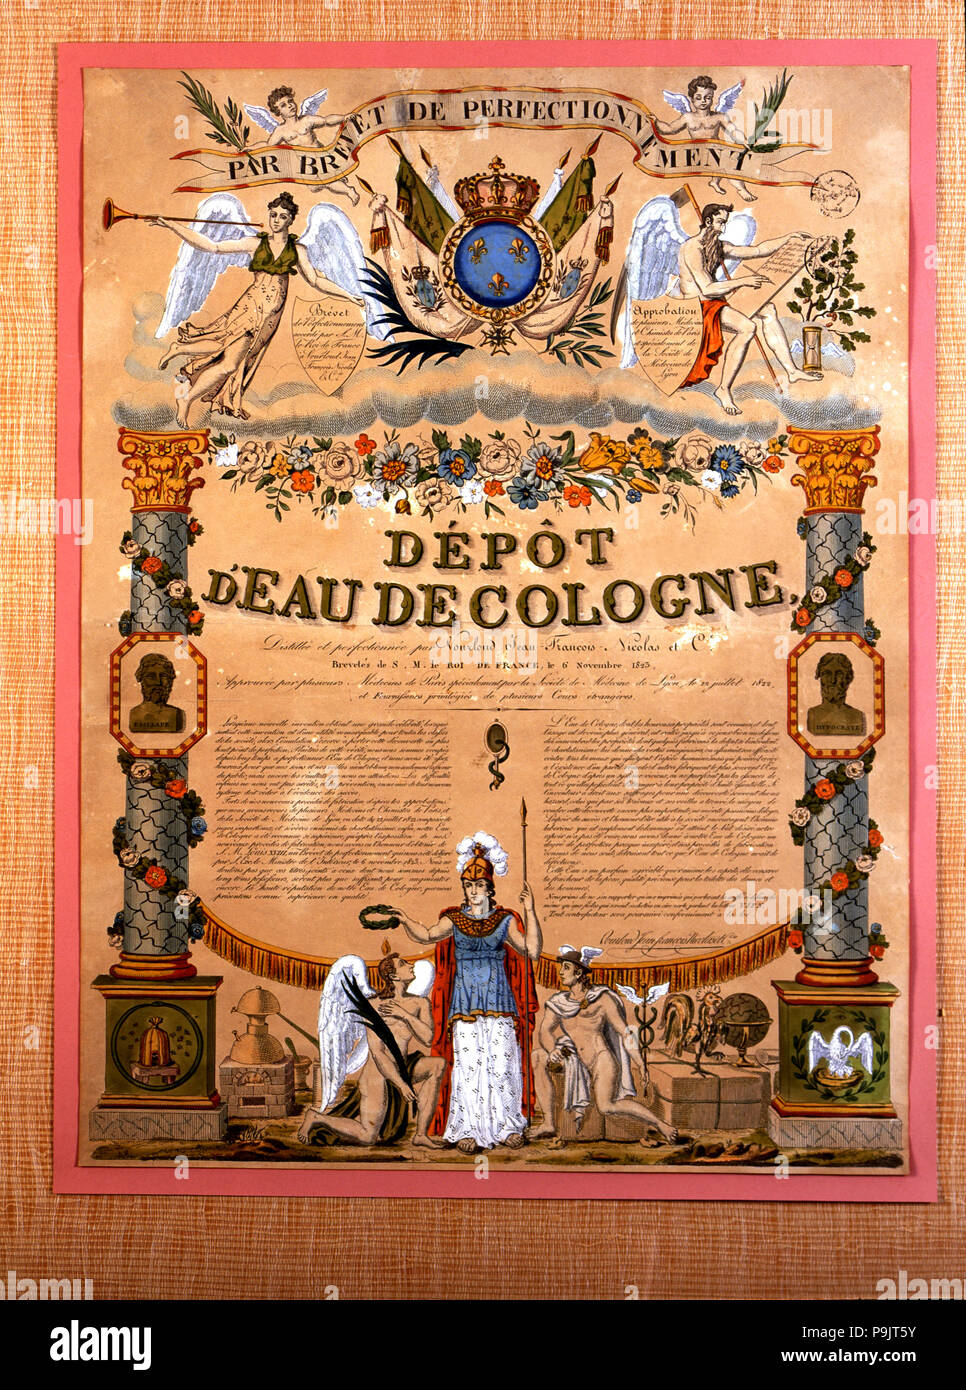 Poster 'Depot d'eau de cologne', hand painting, Paris ca. 1823. Stock Photo